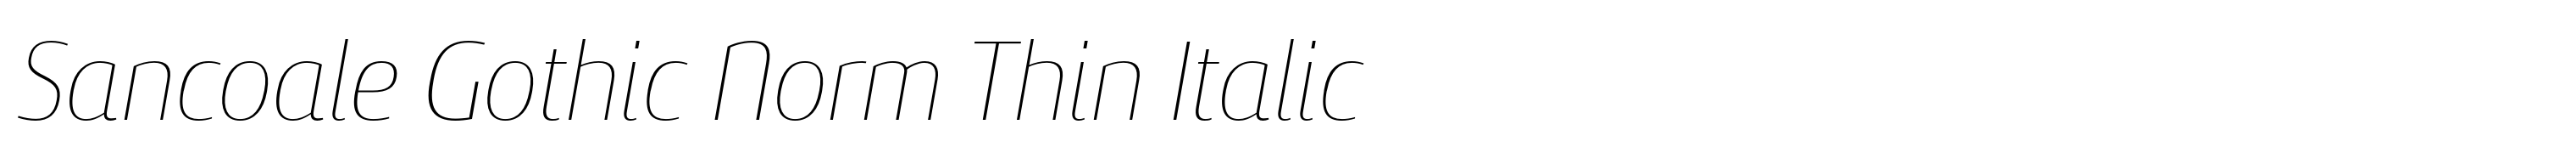 Sancoale Gothic Norm Thin Italic